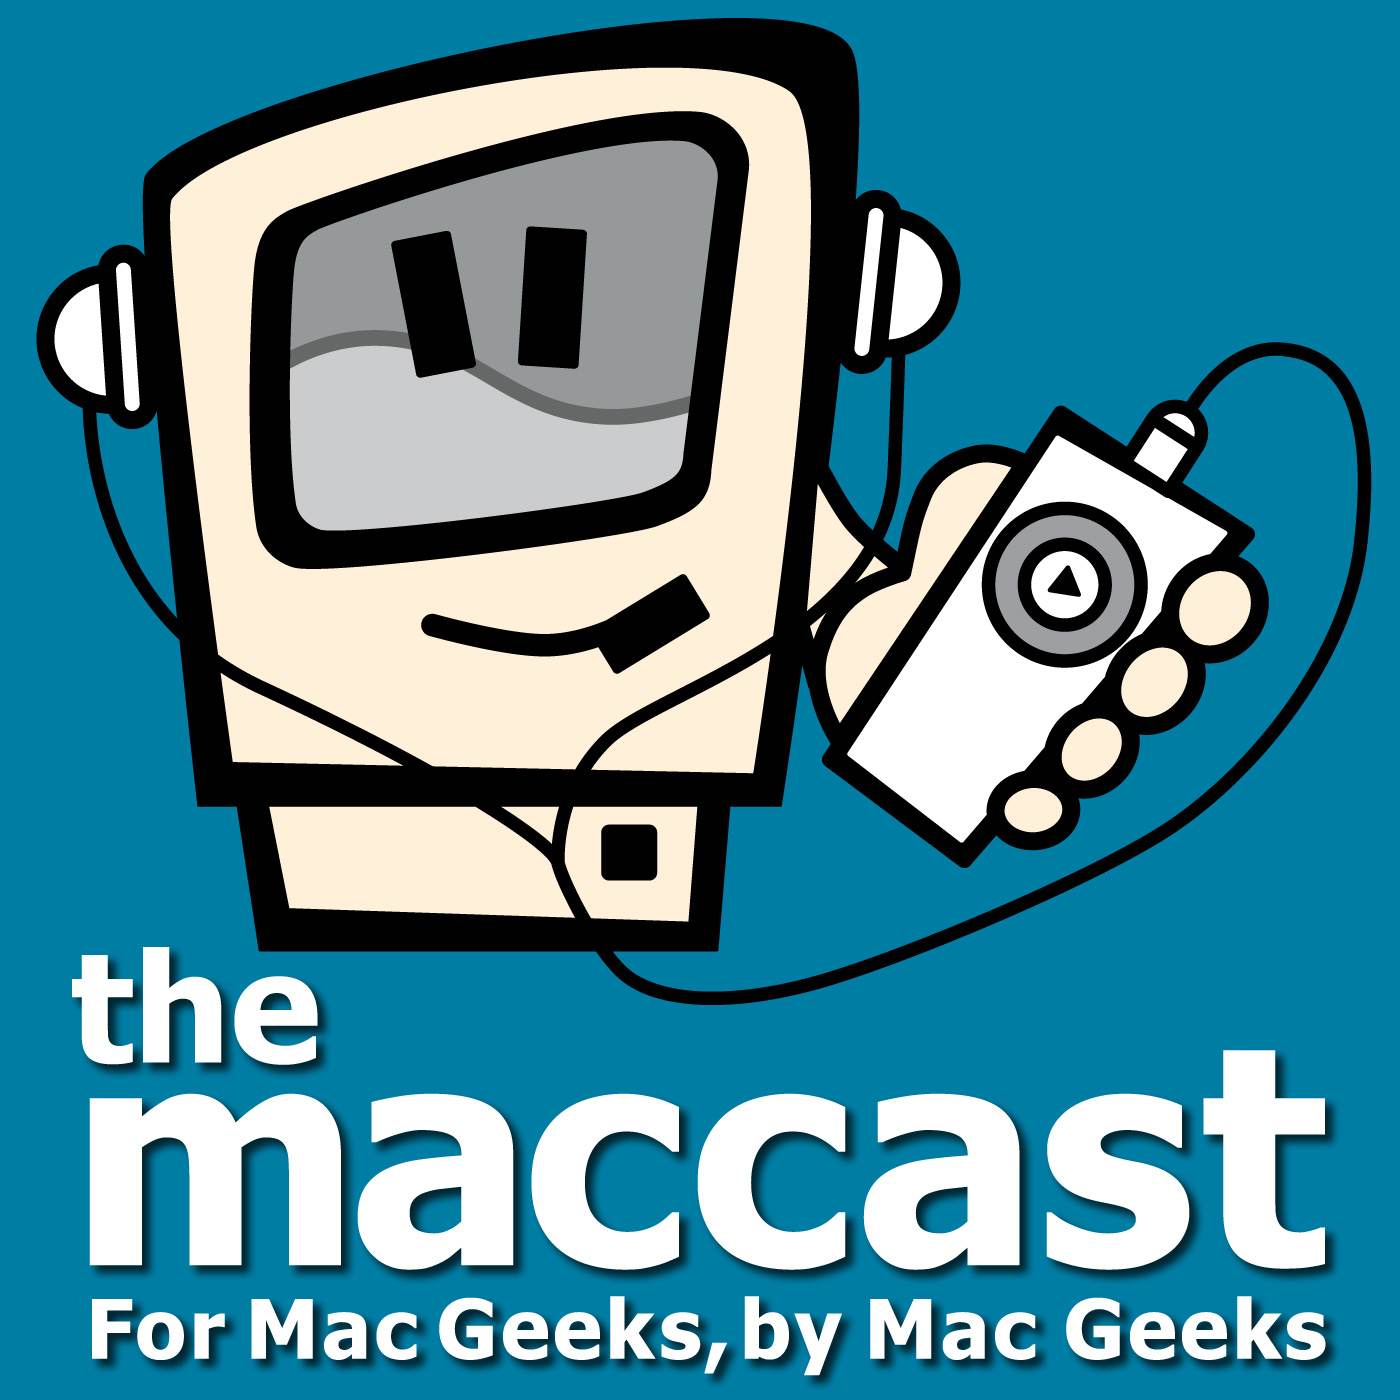 MacCast - For Mac Geeks, by Mac Geeks